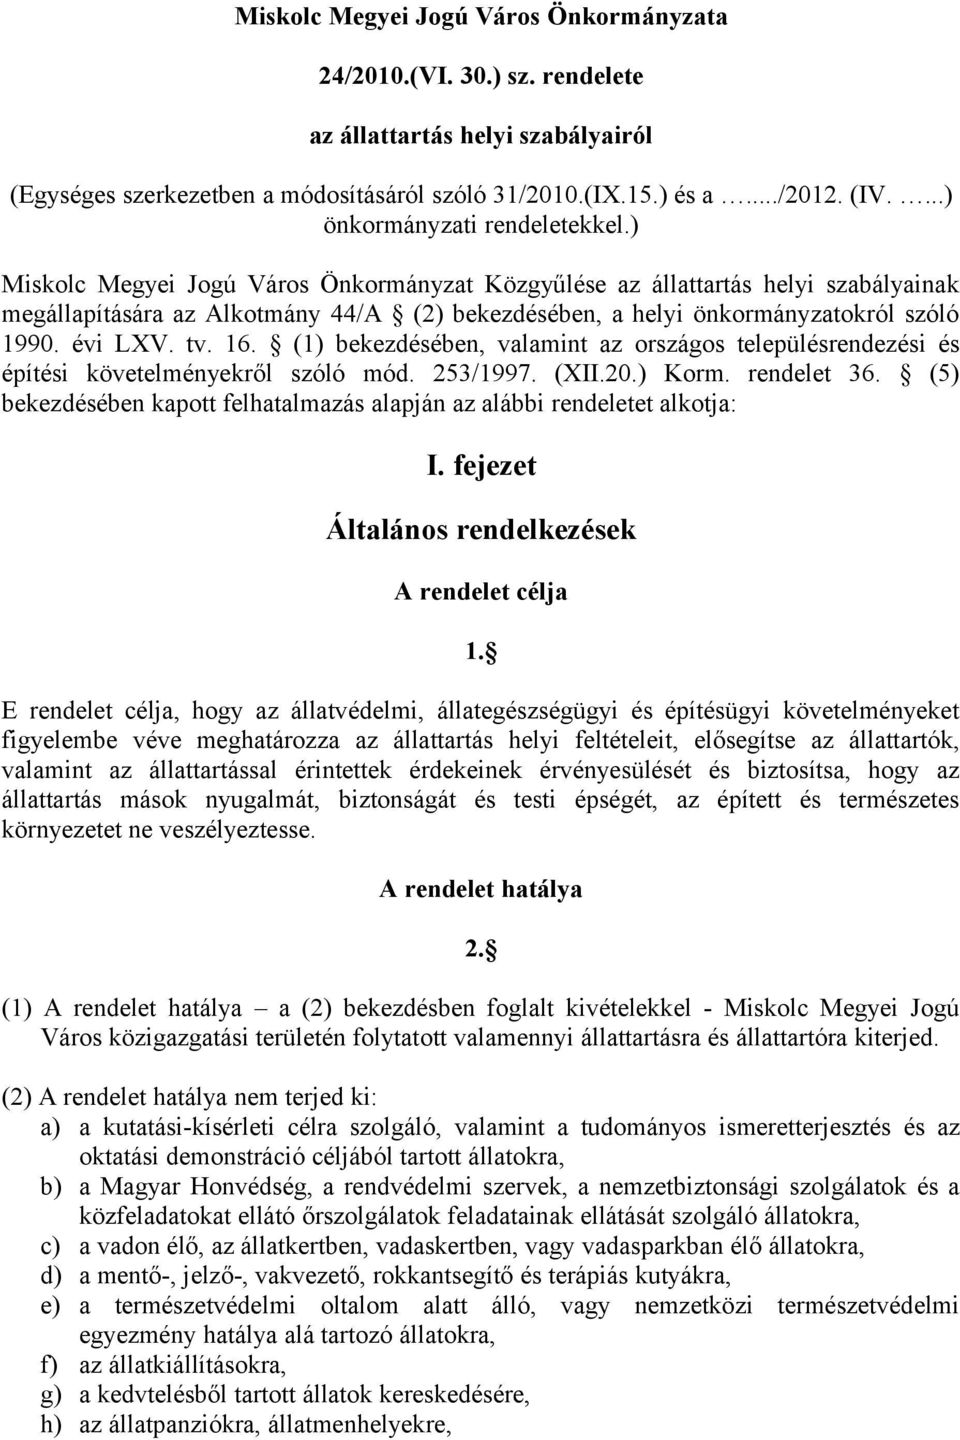 ) Miskolc Megyei Jogú Város Önkormányzat Közgyűlése az állattartás helyi szabályainak megállapítására az Alkotmány 44/A (2) bekezdésében, a helyi önkormányzatokról szóló 1990. évi LXV. tv. 16.